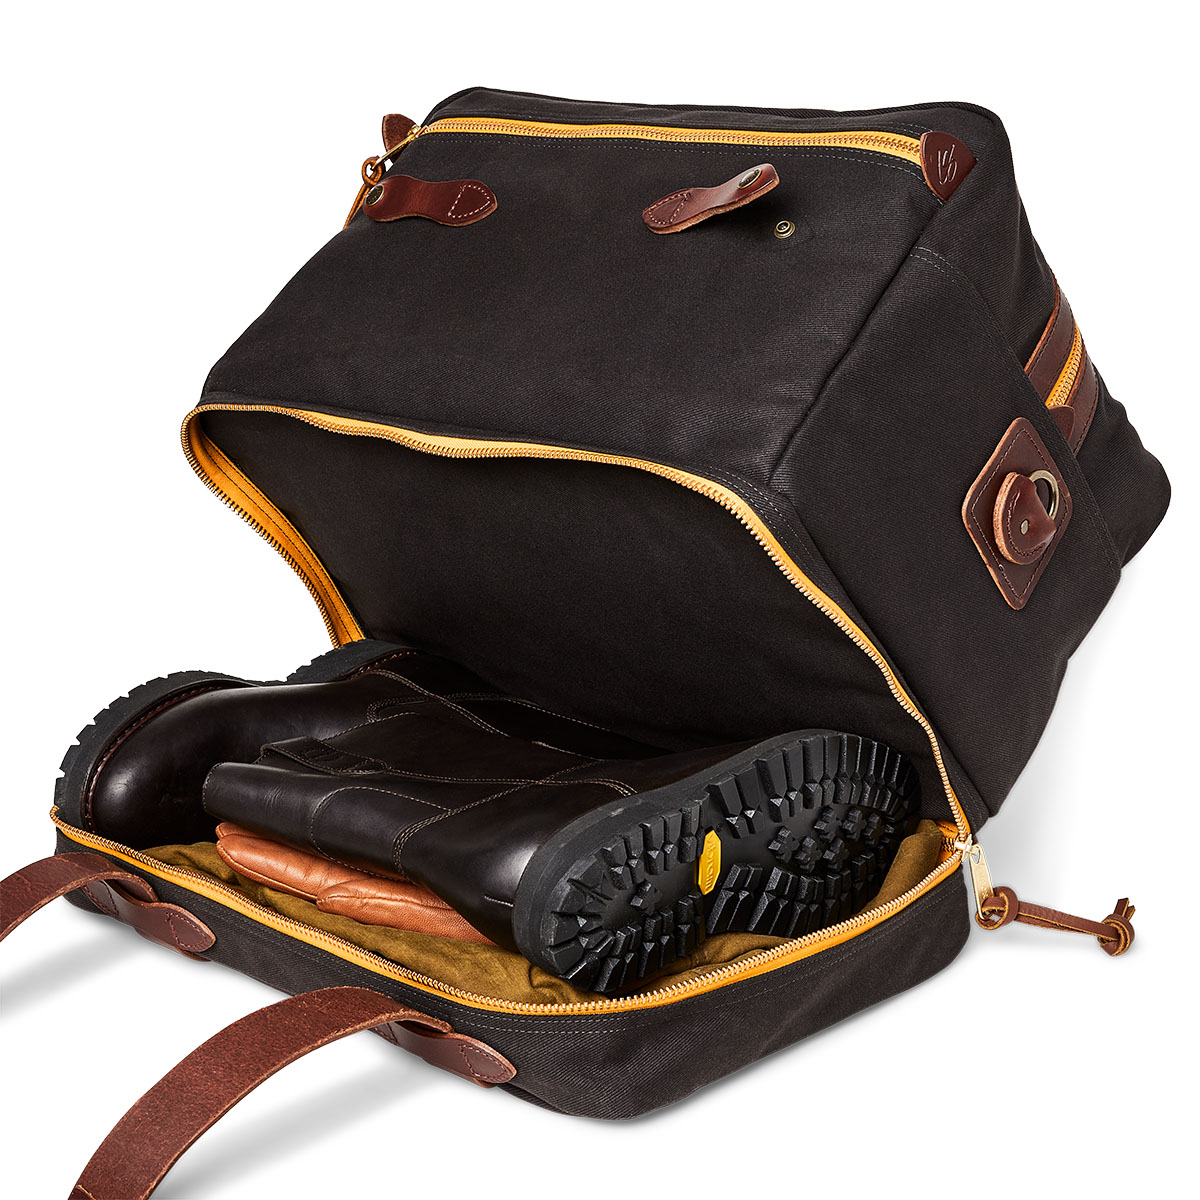 Filson Traveller Outfitter Bag Stapleton Cinder met bodemcompartiment met rits en ritsvakken over de hele breedte